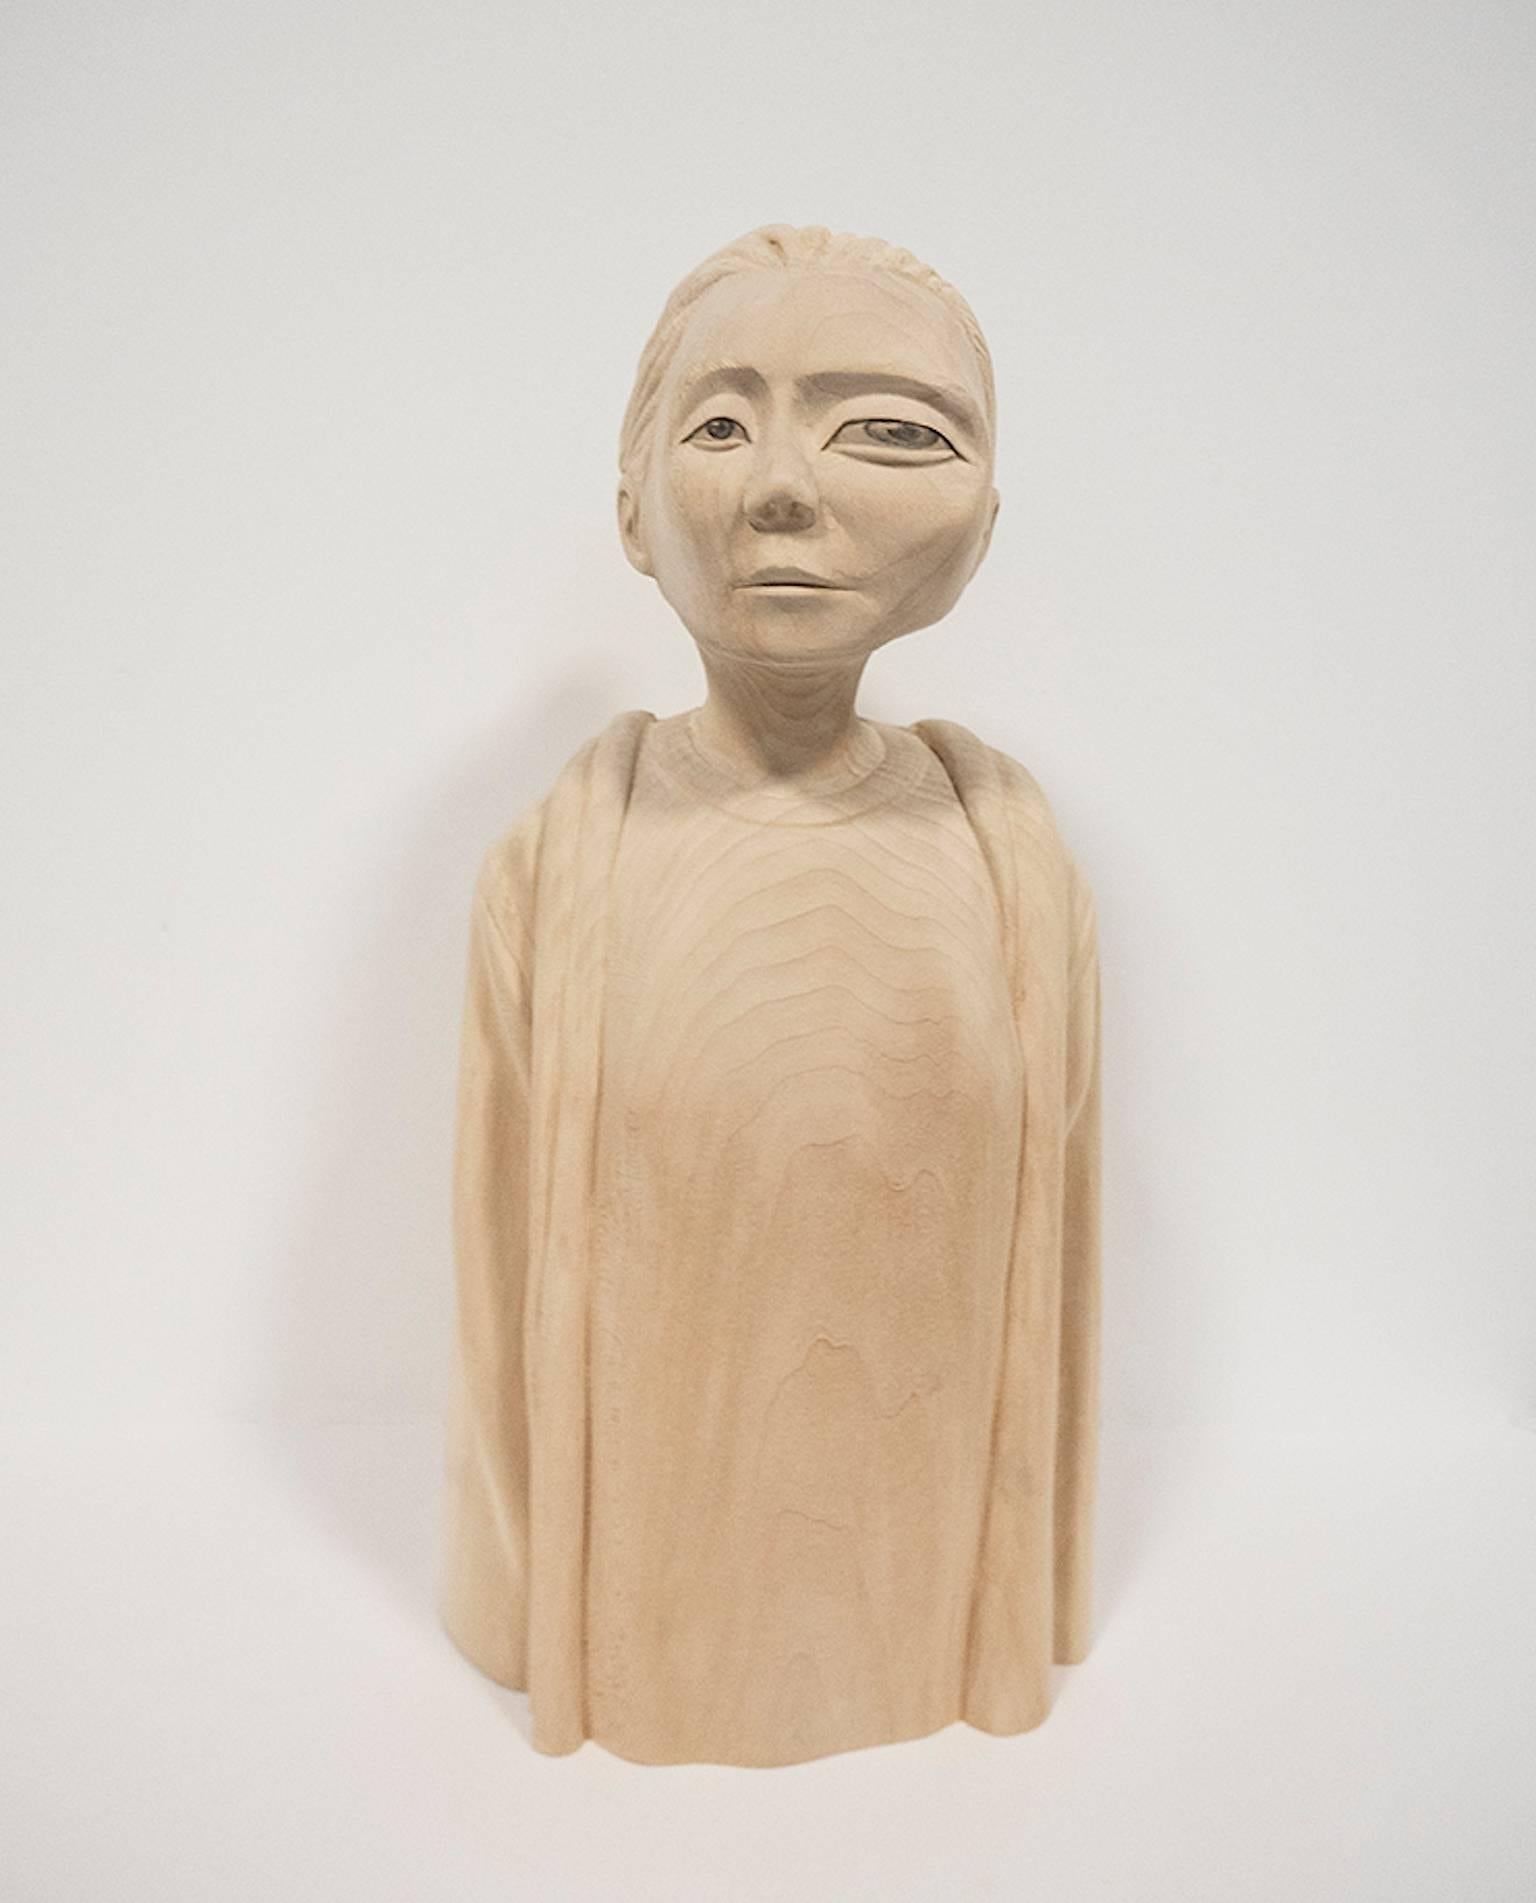 Paul Kaptein Figurative Sculpture – "RAIN" handgeschnitzte Holzskulptur, zeitgenössisch, figurativ, surrealistisch